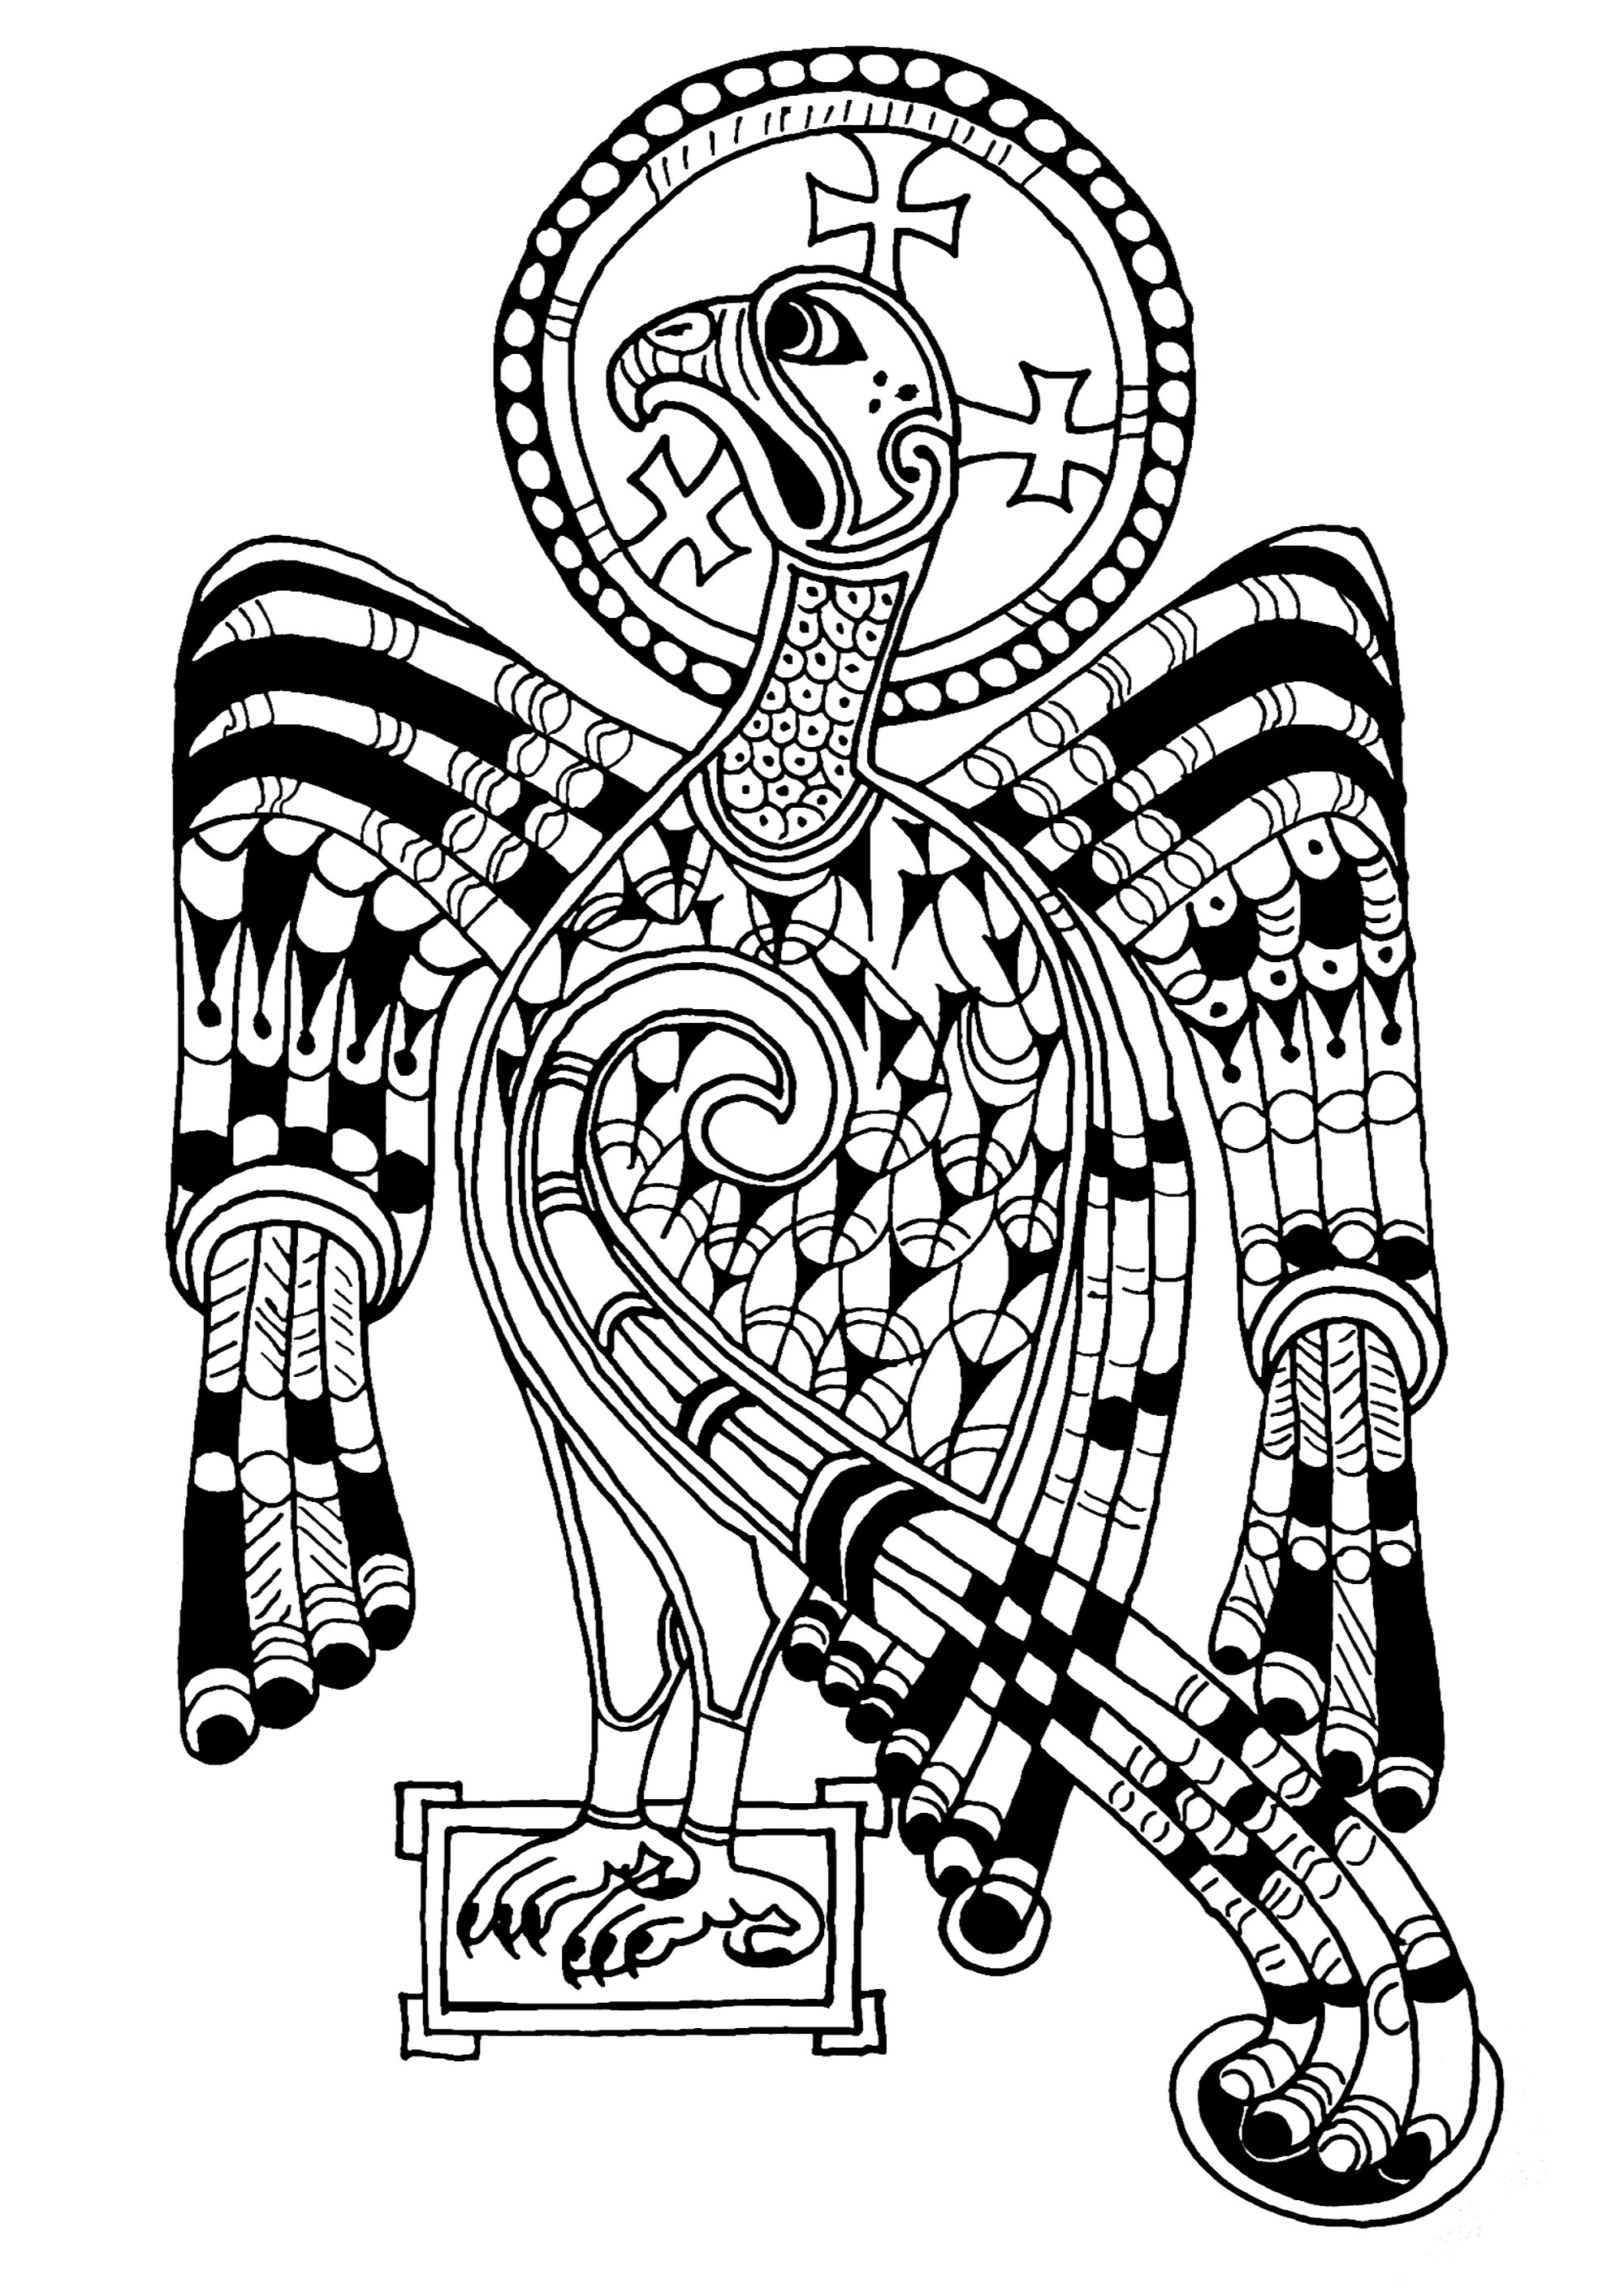 Águila representada en el Libro de Kells, símbolo de San Juan y de la Ascensión de Jesús. El 'Libro de Kells' es un manuscrito medieval que data de la Edad Media (siglo IX). Conserva 680 páginas que reúnen los cuatro Evangelios latinos del Nuevo Testamento. Está expuesto en la Biblioteca del Trinity College de Dublín.